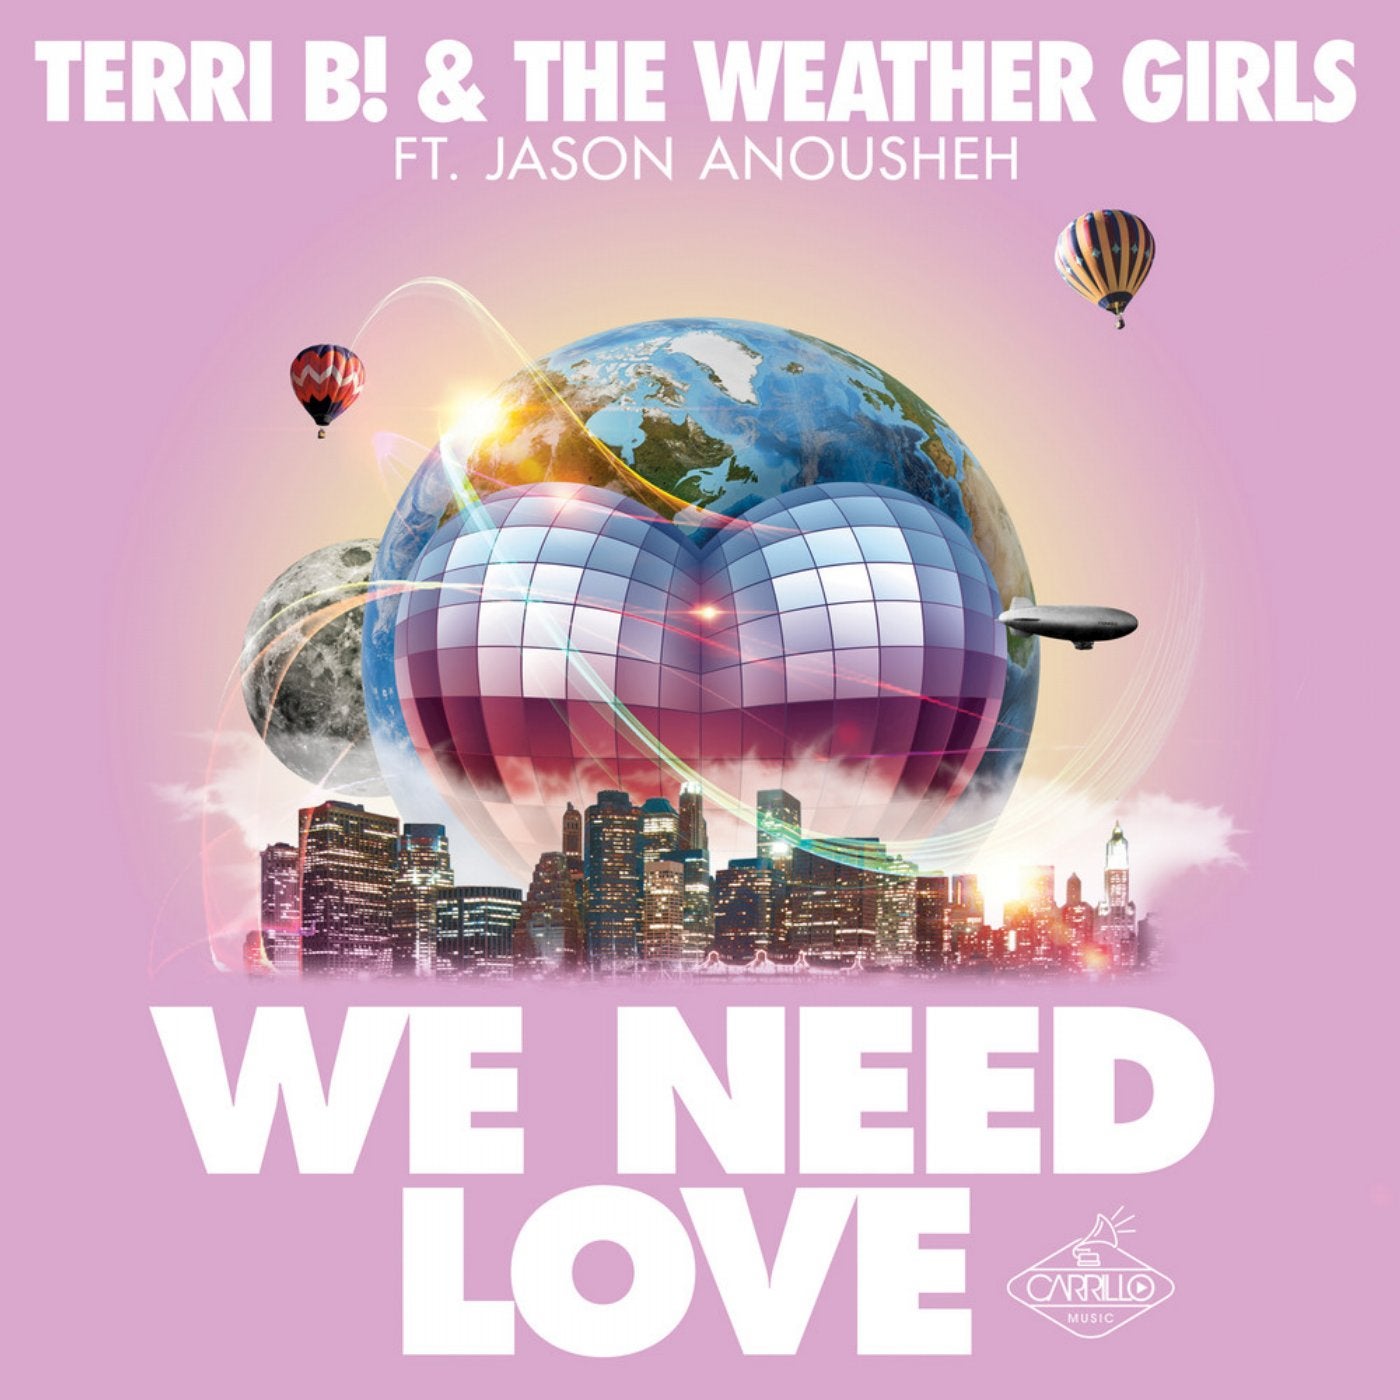 We Need Love (Remixes)